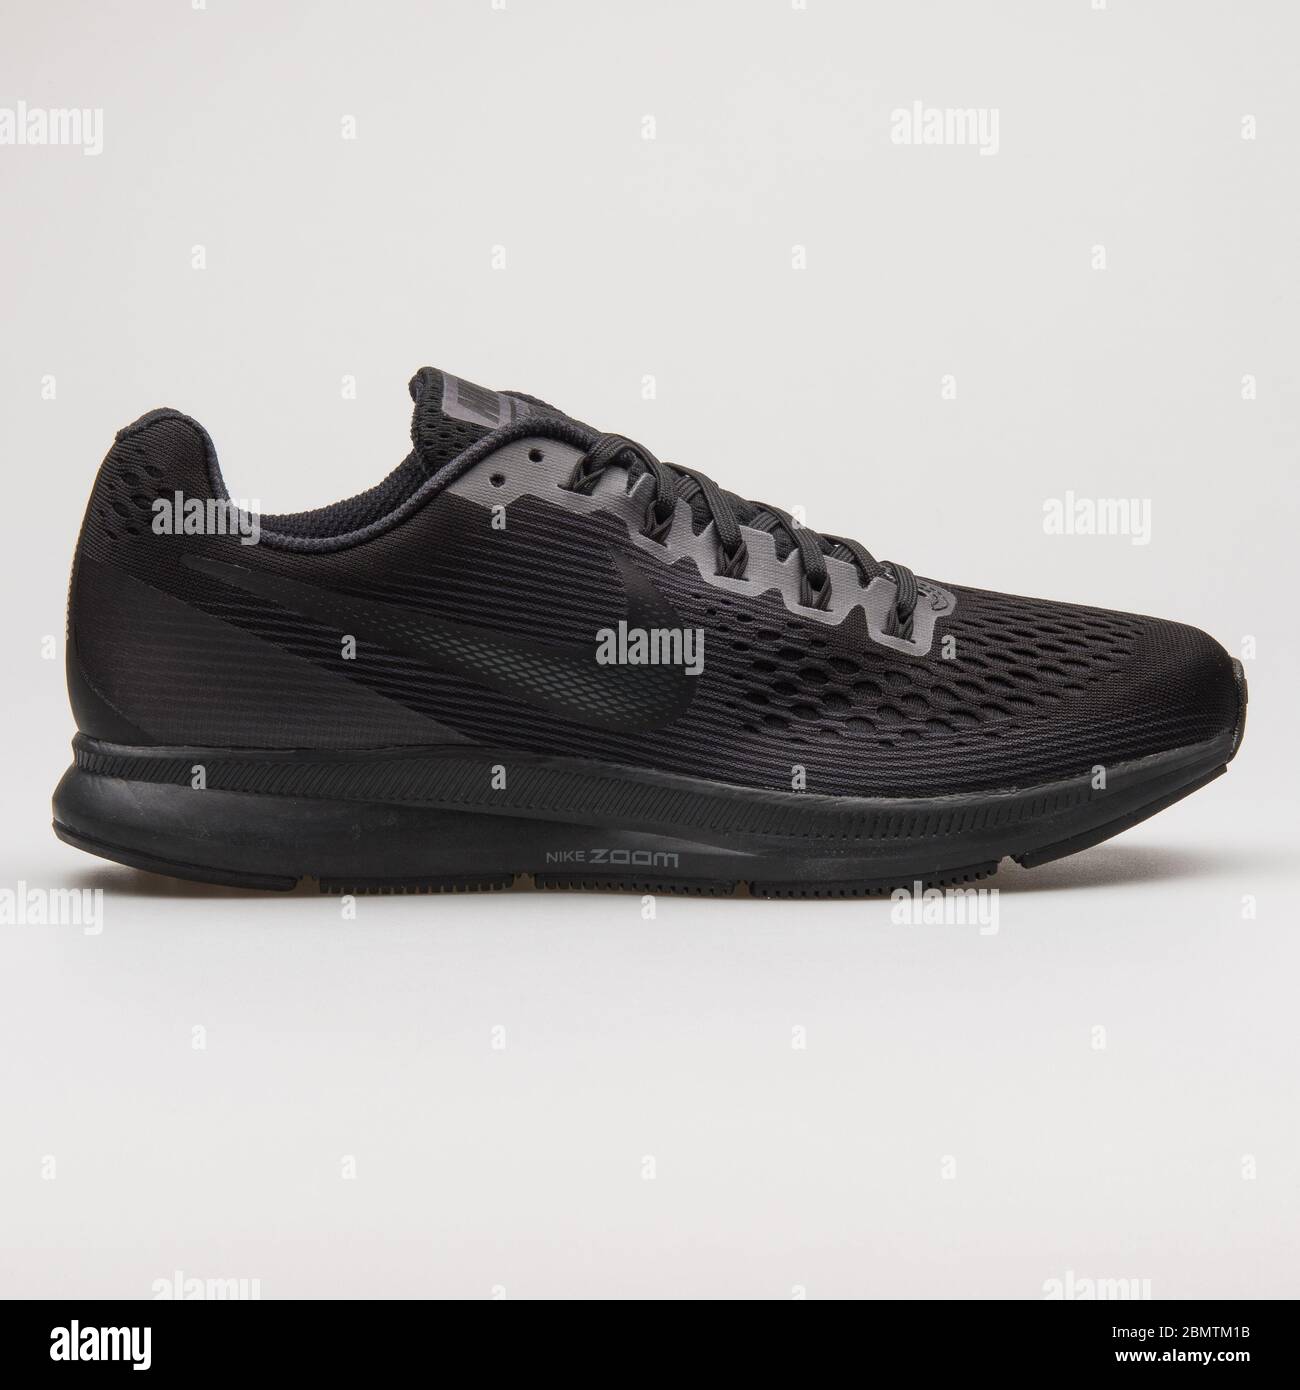 VIENA, AUSTRIA - 19 DE FEBRERO de 2018: Nike Air Zoom Pegasus 34 sneakers  negras sobre fondo blanco Fotografía de stock - Alamy